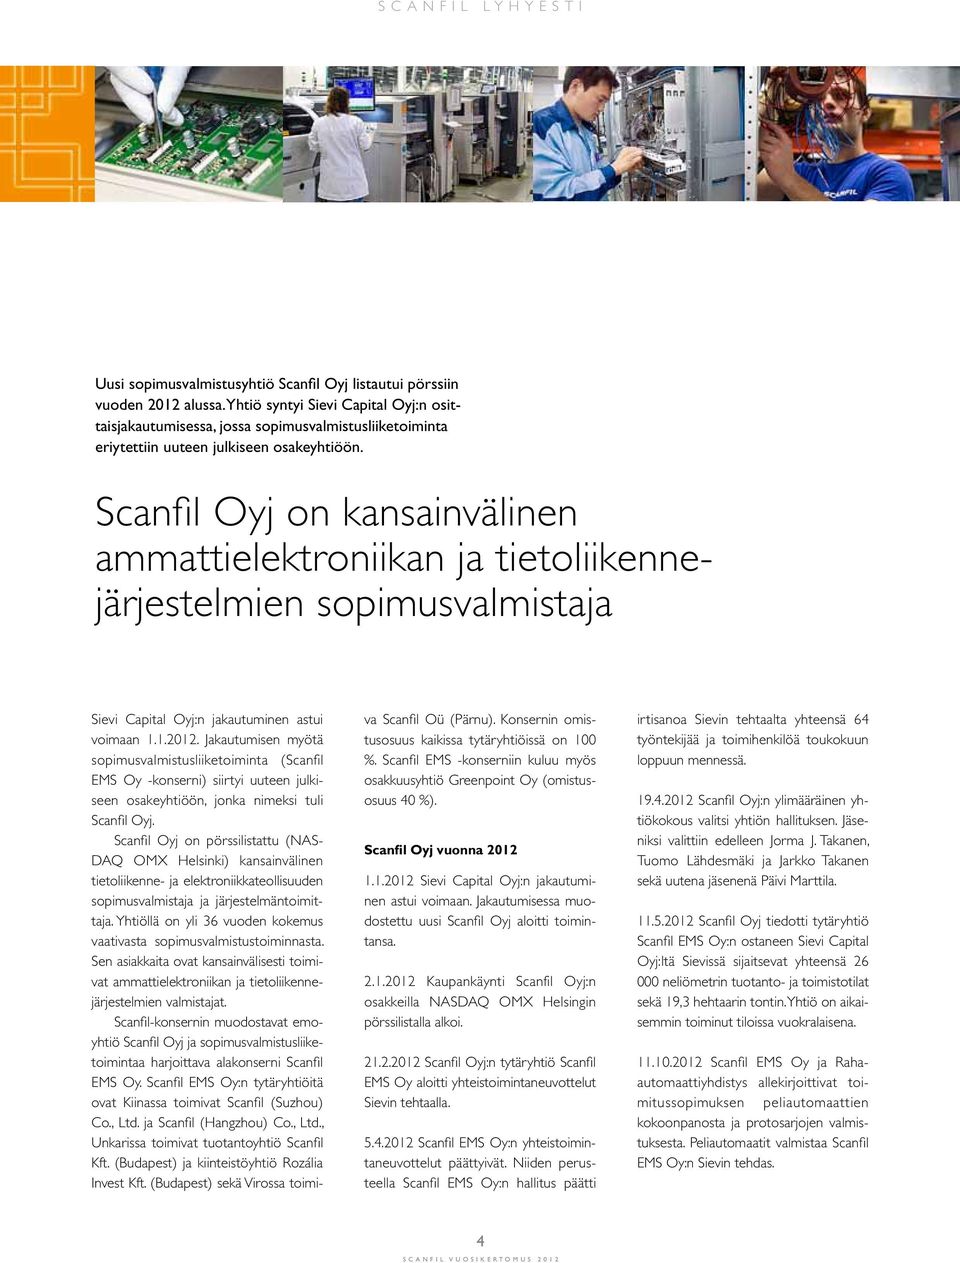 Scanfil Oyj on kansainvälinen ammattielektroniikan ja tietoliikennejärjestelmien sopimusvalmistaja Sievi Capital Oyj:n jakautuminen astui voimaan 1.1.2012.